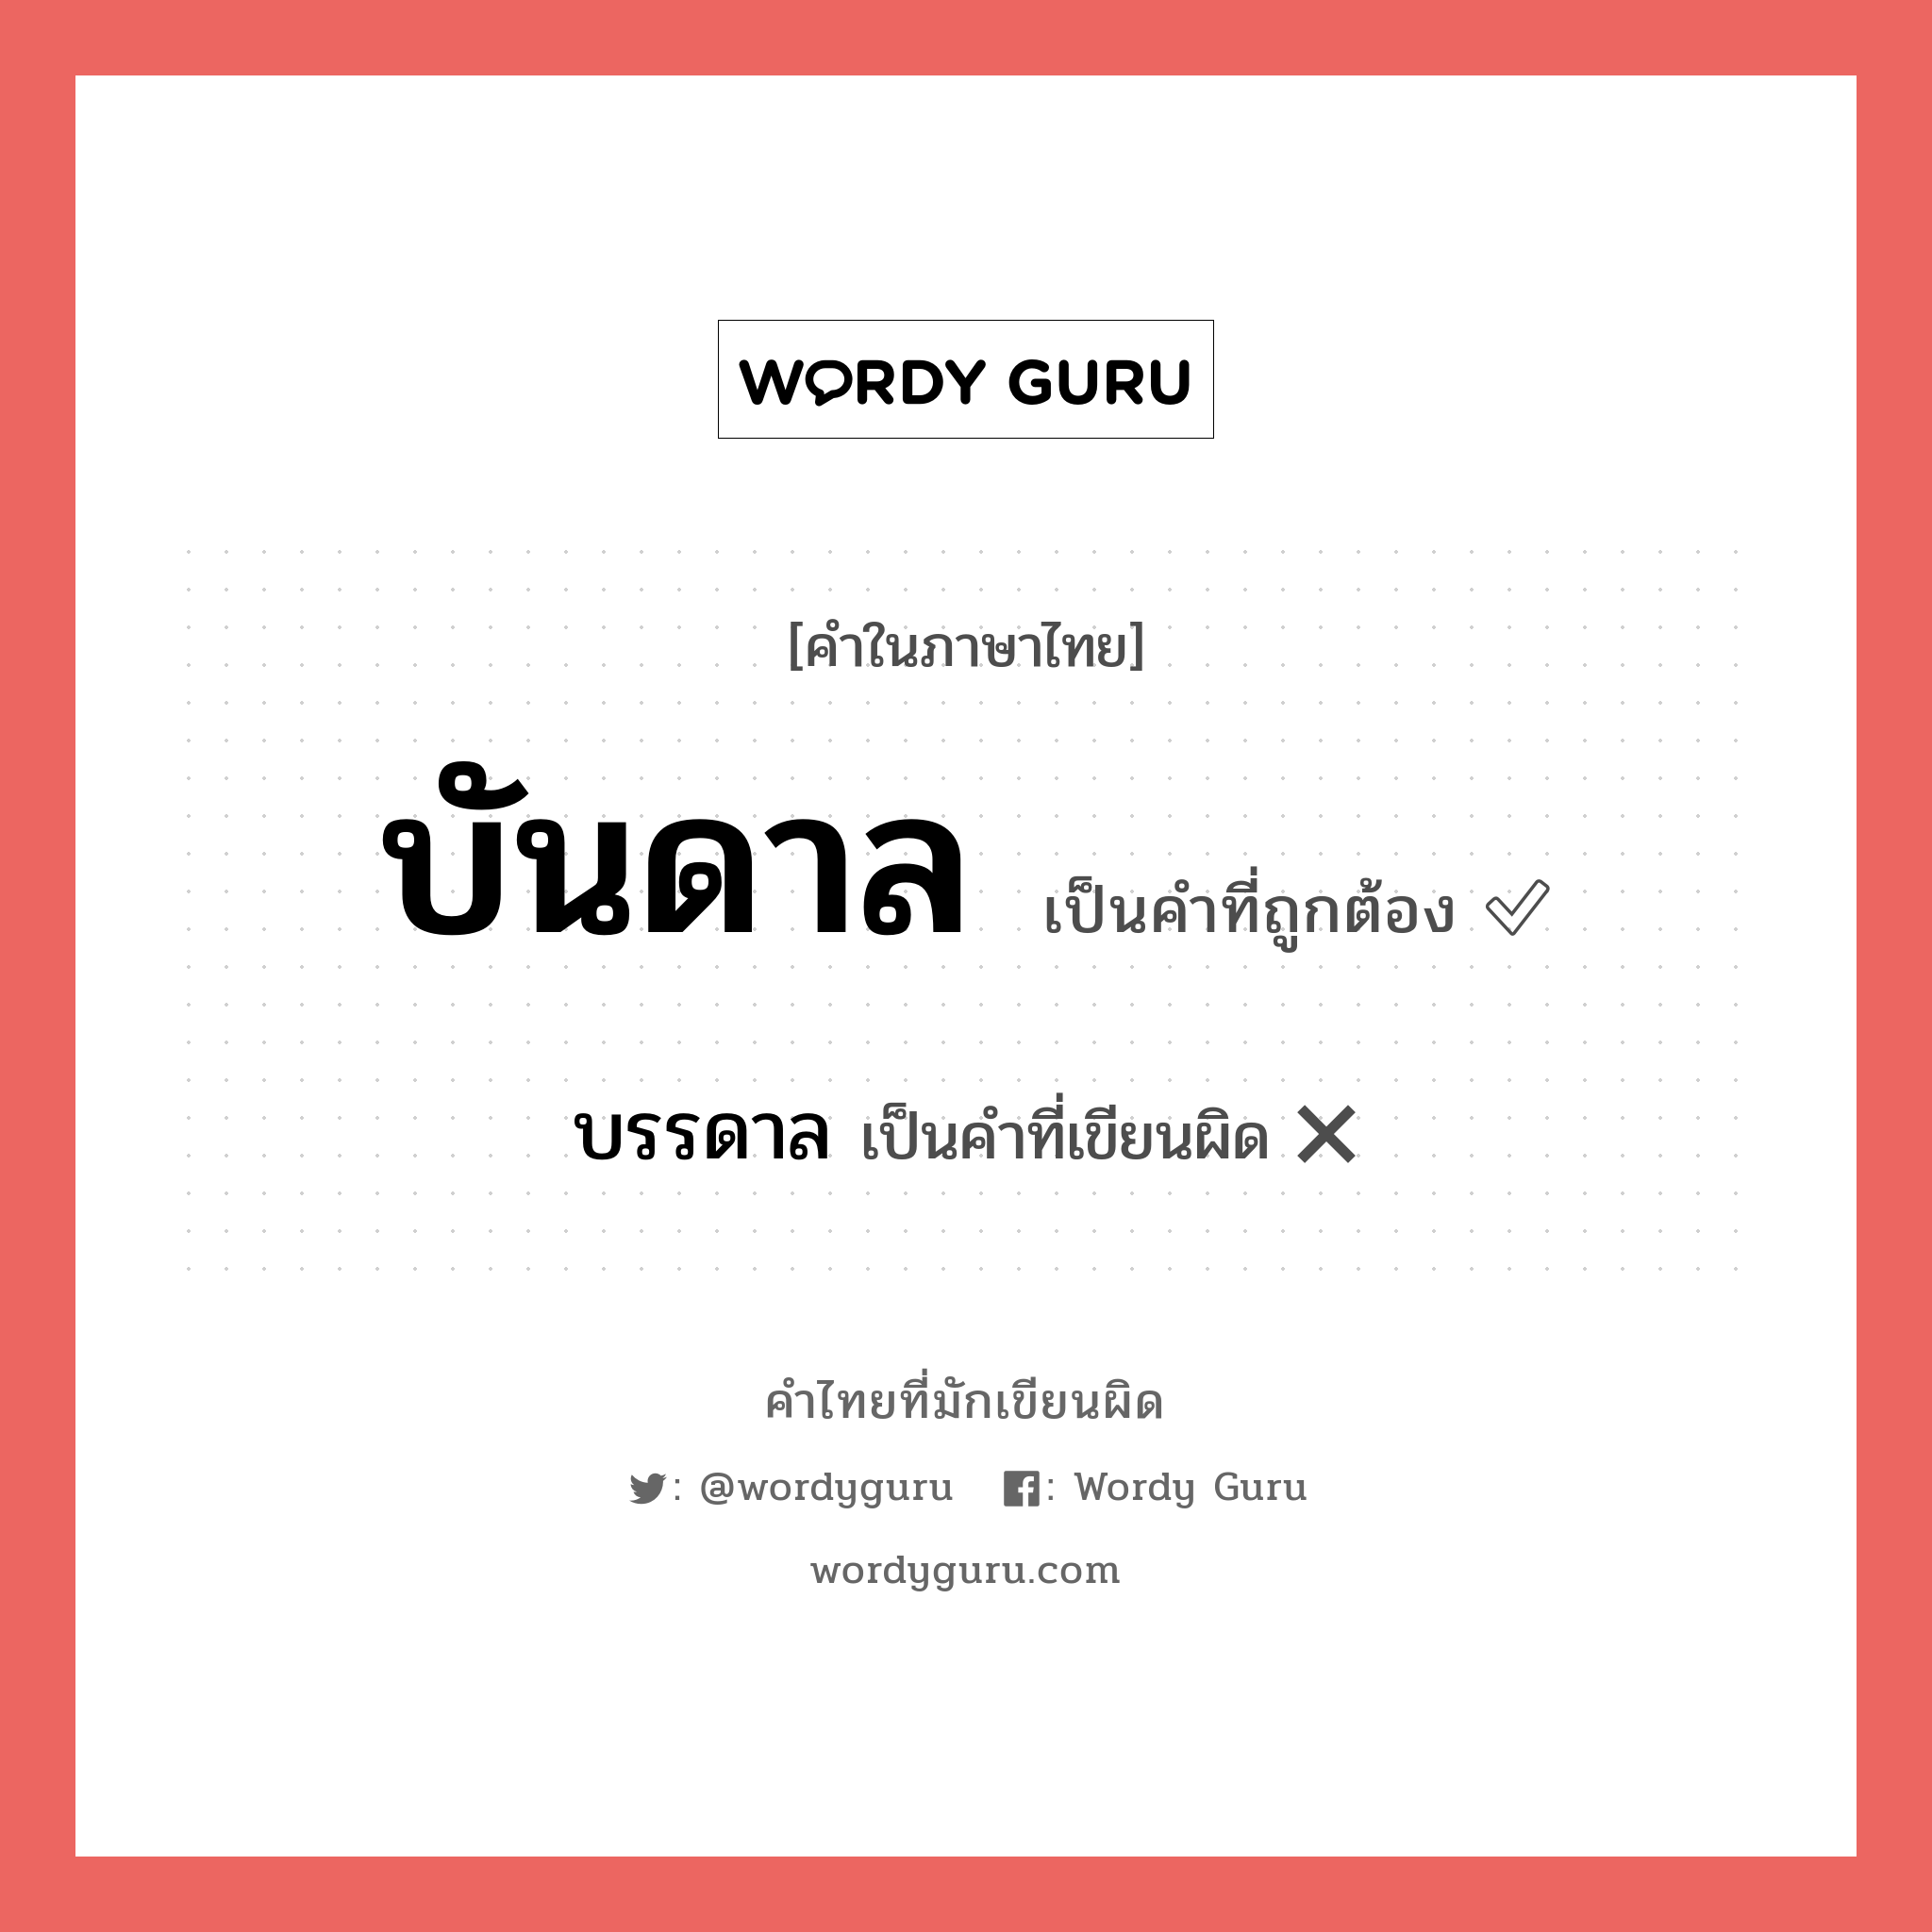 บันดาล หรือ บรรดาล เขียนยังไง? คำไหนเขียนถูก?, คำในภาษาไทยที่มักเขียนผิด บันดาล คำที่ผิด ❌ บรรดาล